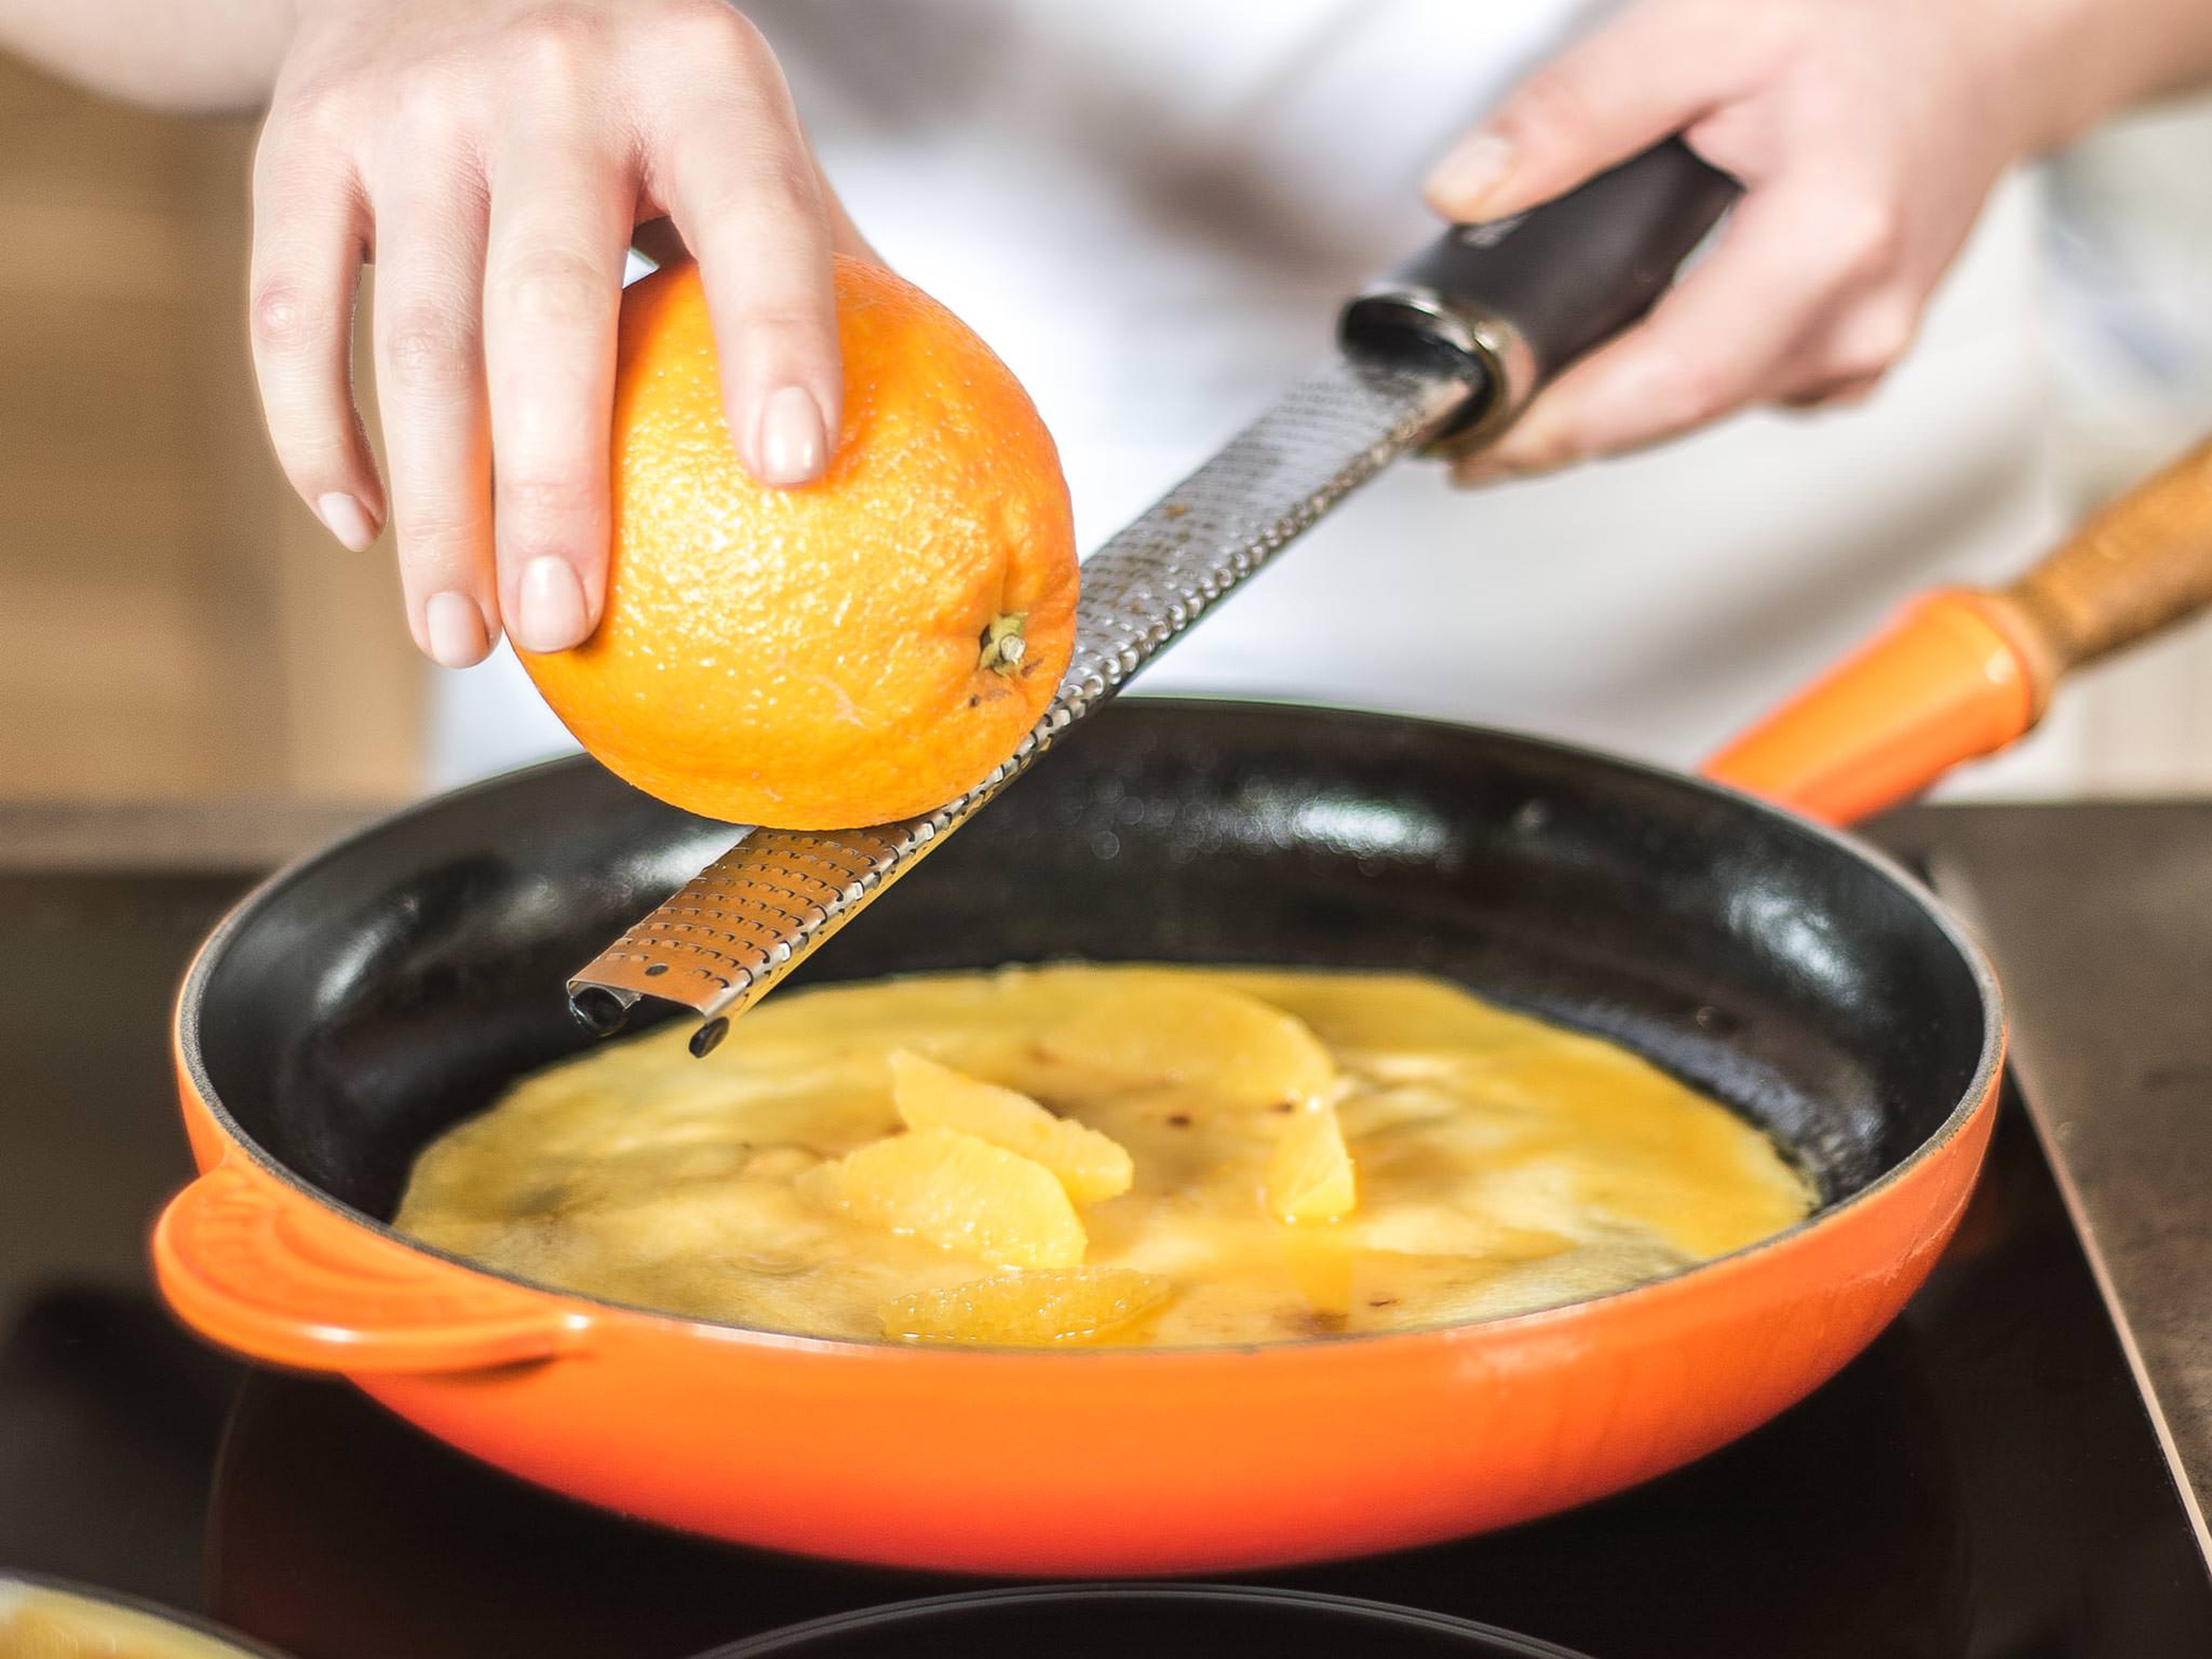 Die fertig gebackenen Crêpes mit der Orangensoße warm machen. Die Orangenfilets sowie den Abrieb der Orangen hinzugeben, nach Belieben falten und warm servieren.